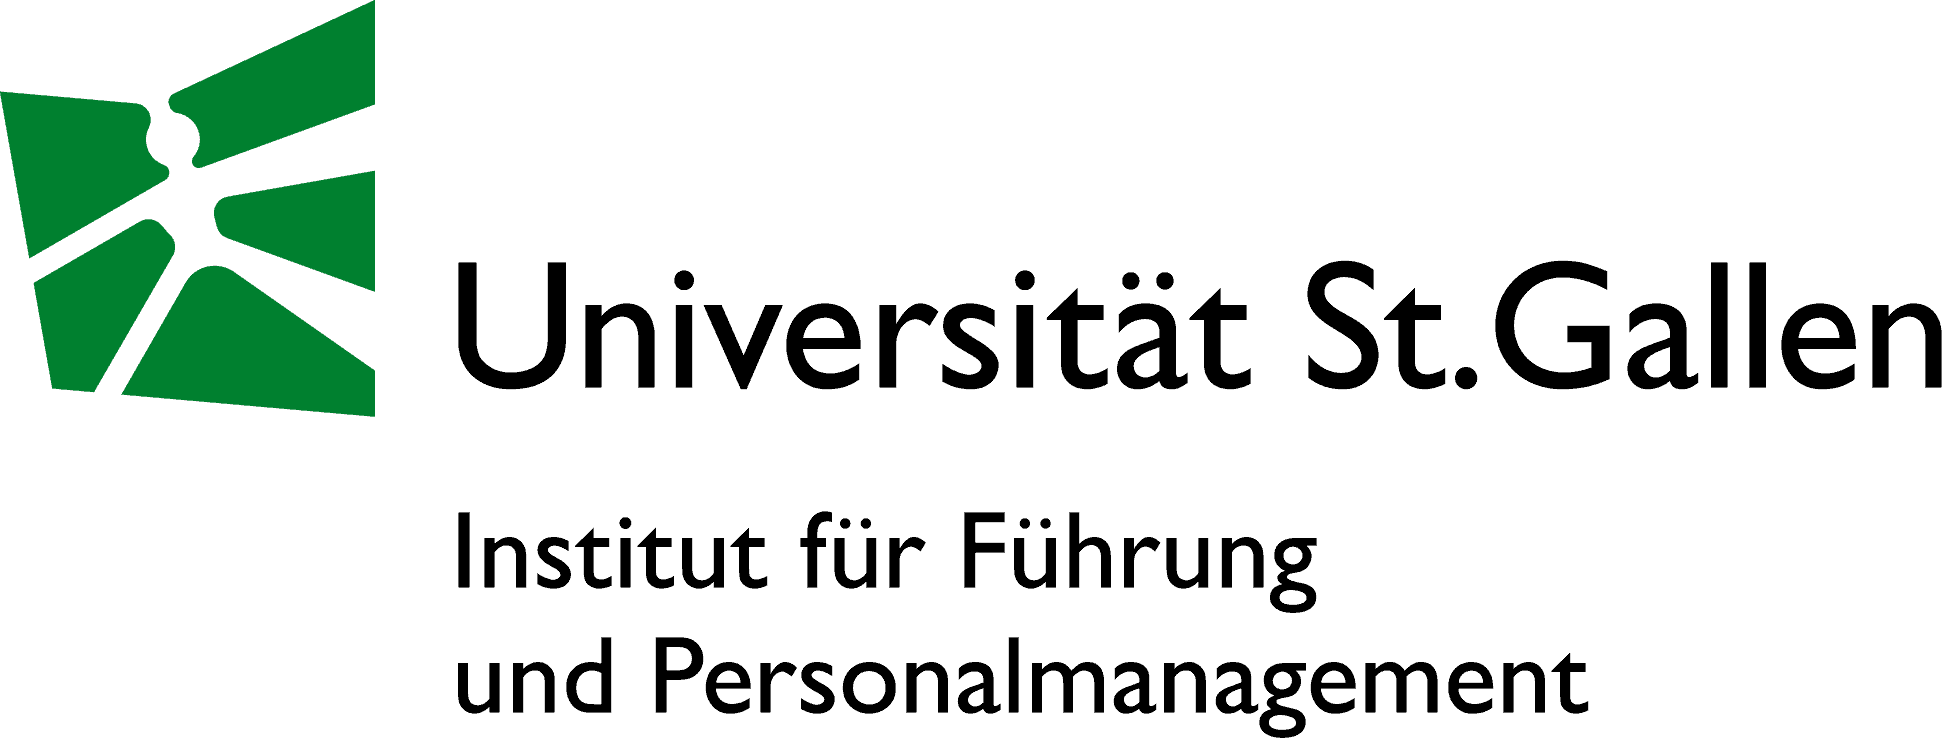 Institut für Führung und Personalmanagement